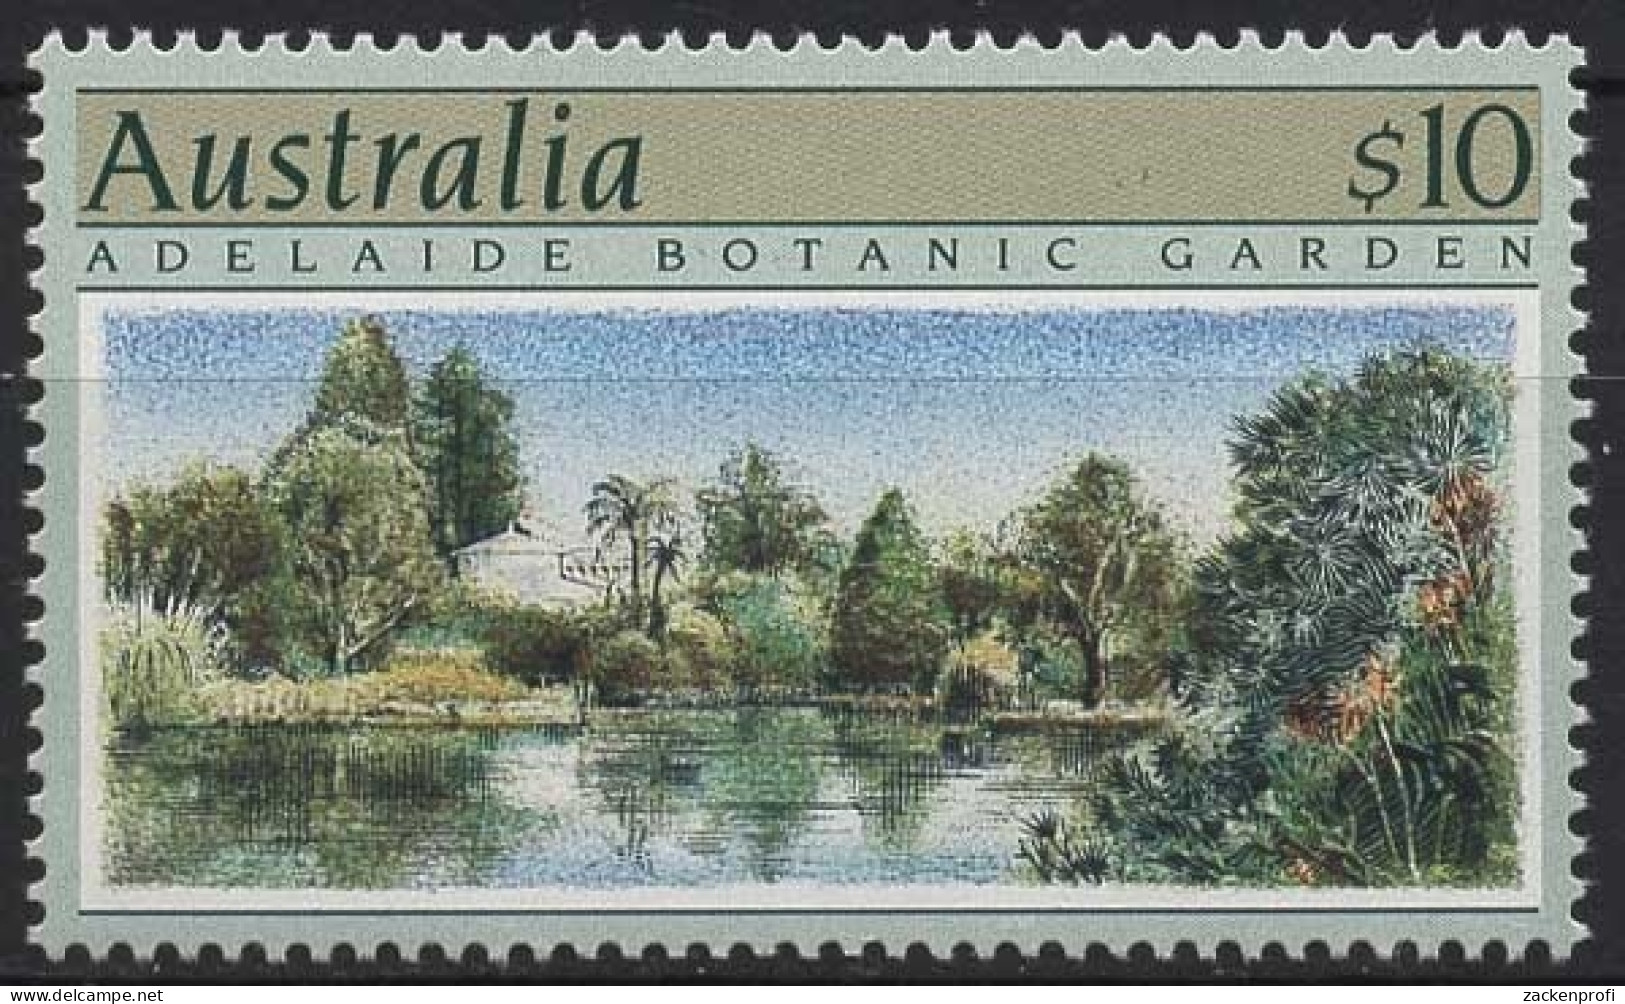 Australien 1989 Gartenanlagen 1150 Postfrisch - Nuovi